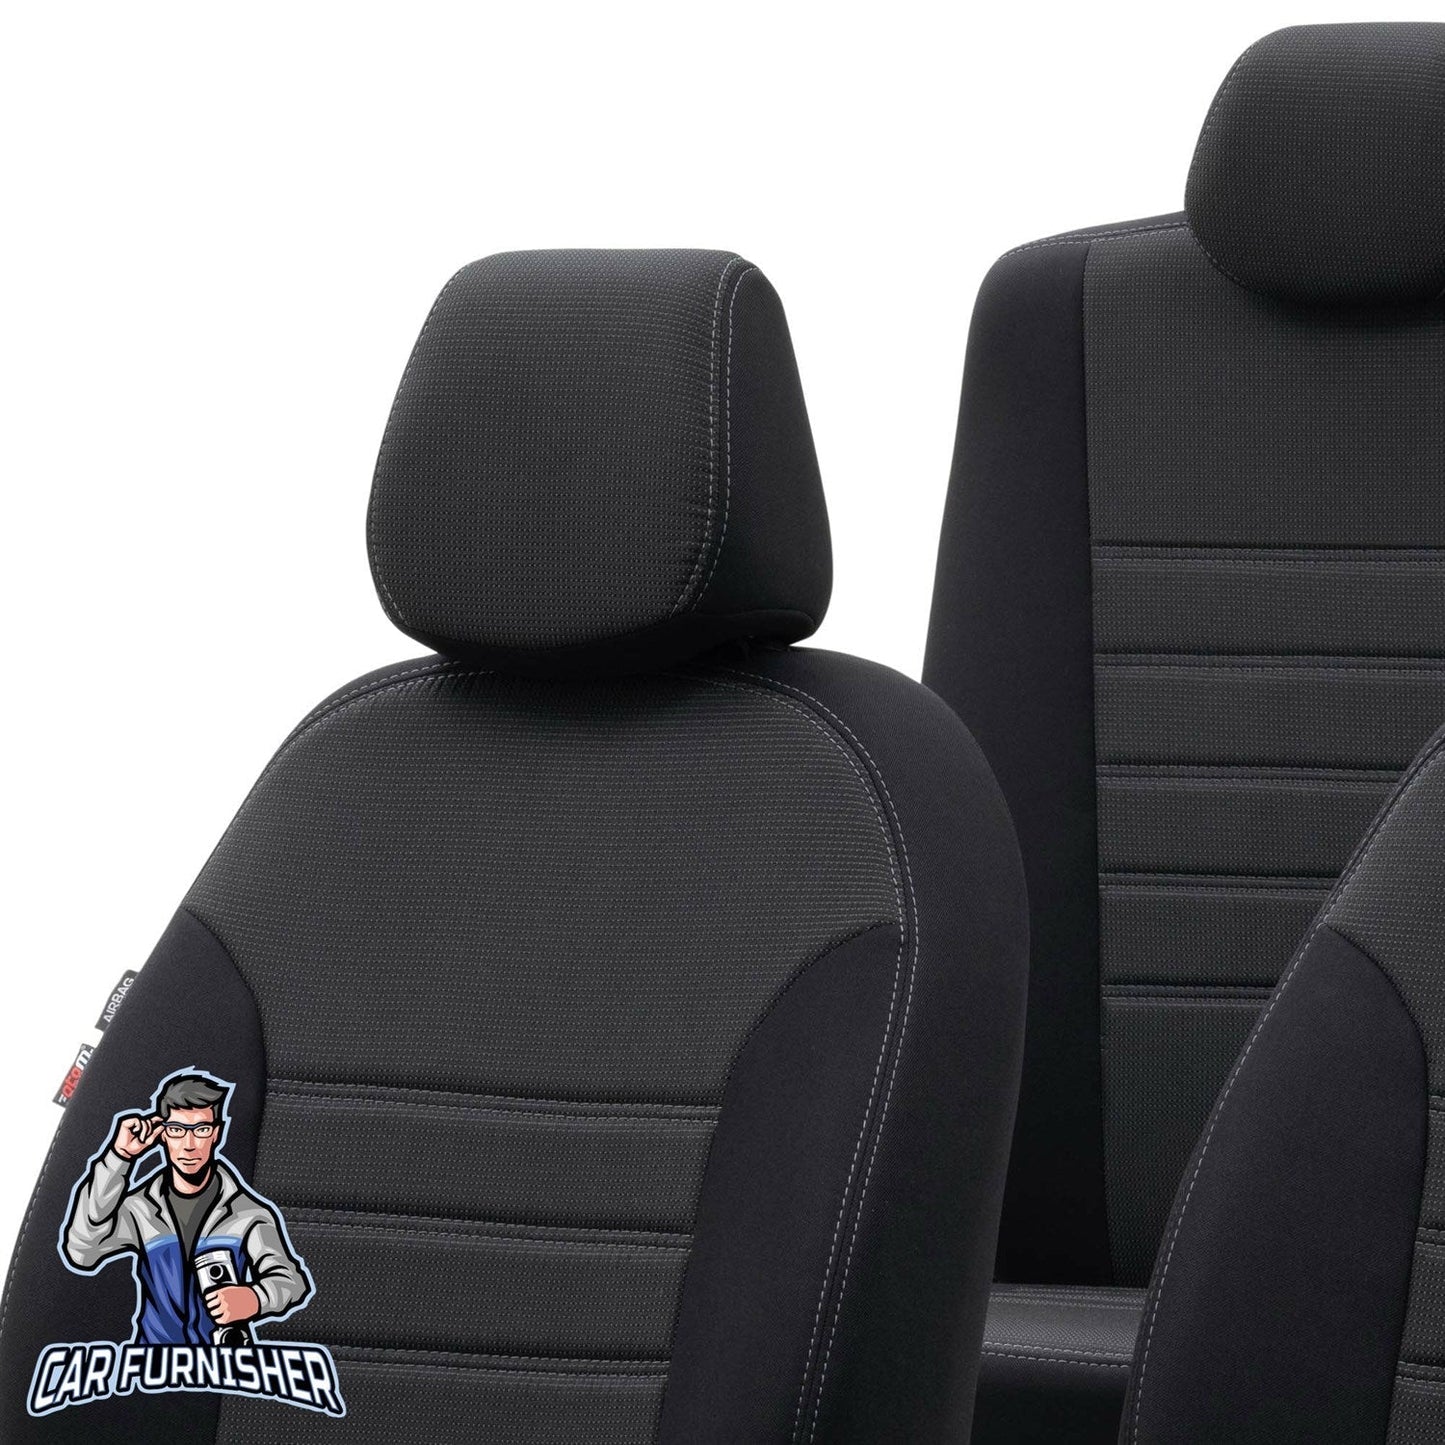 Volvo S90 Seat Cover Original Jacquard Design Dark Beige Jacquard Fabric